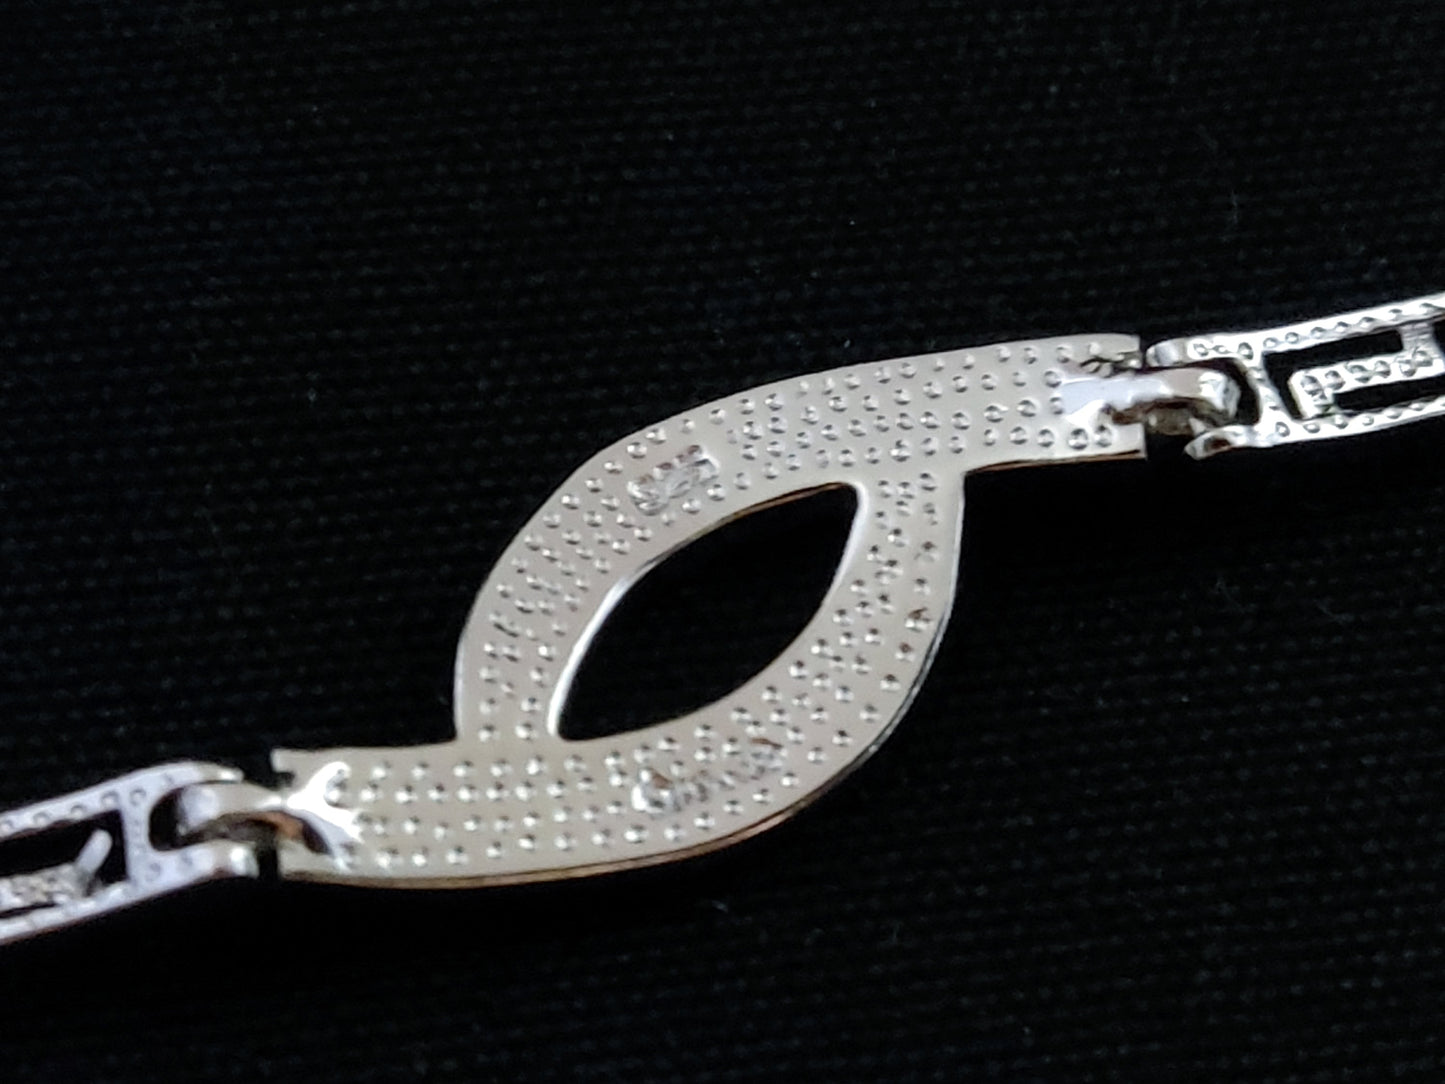 Greek Key Blue Opal Knot Silver Bracelet